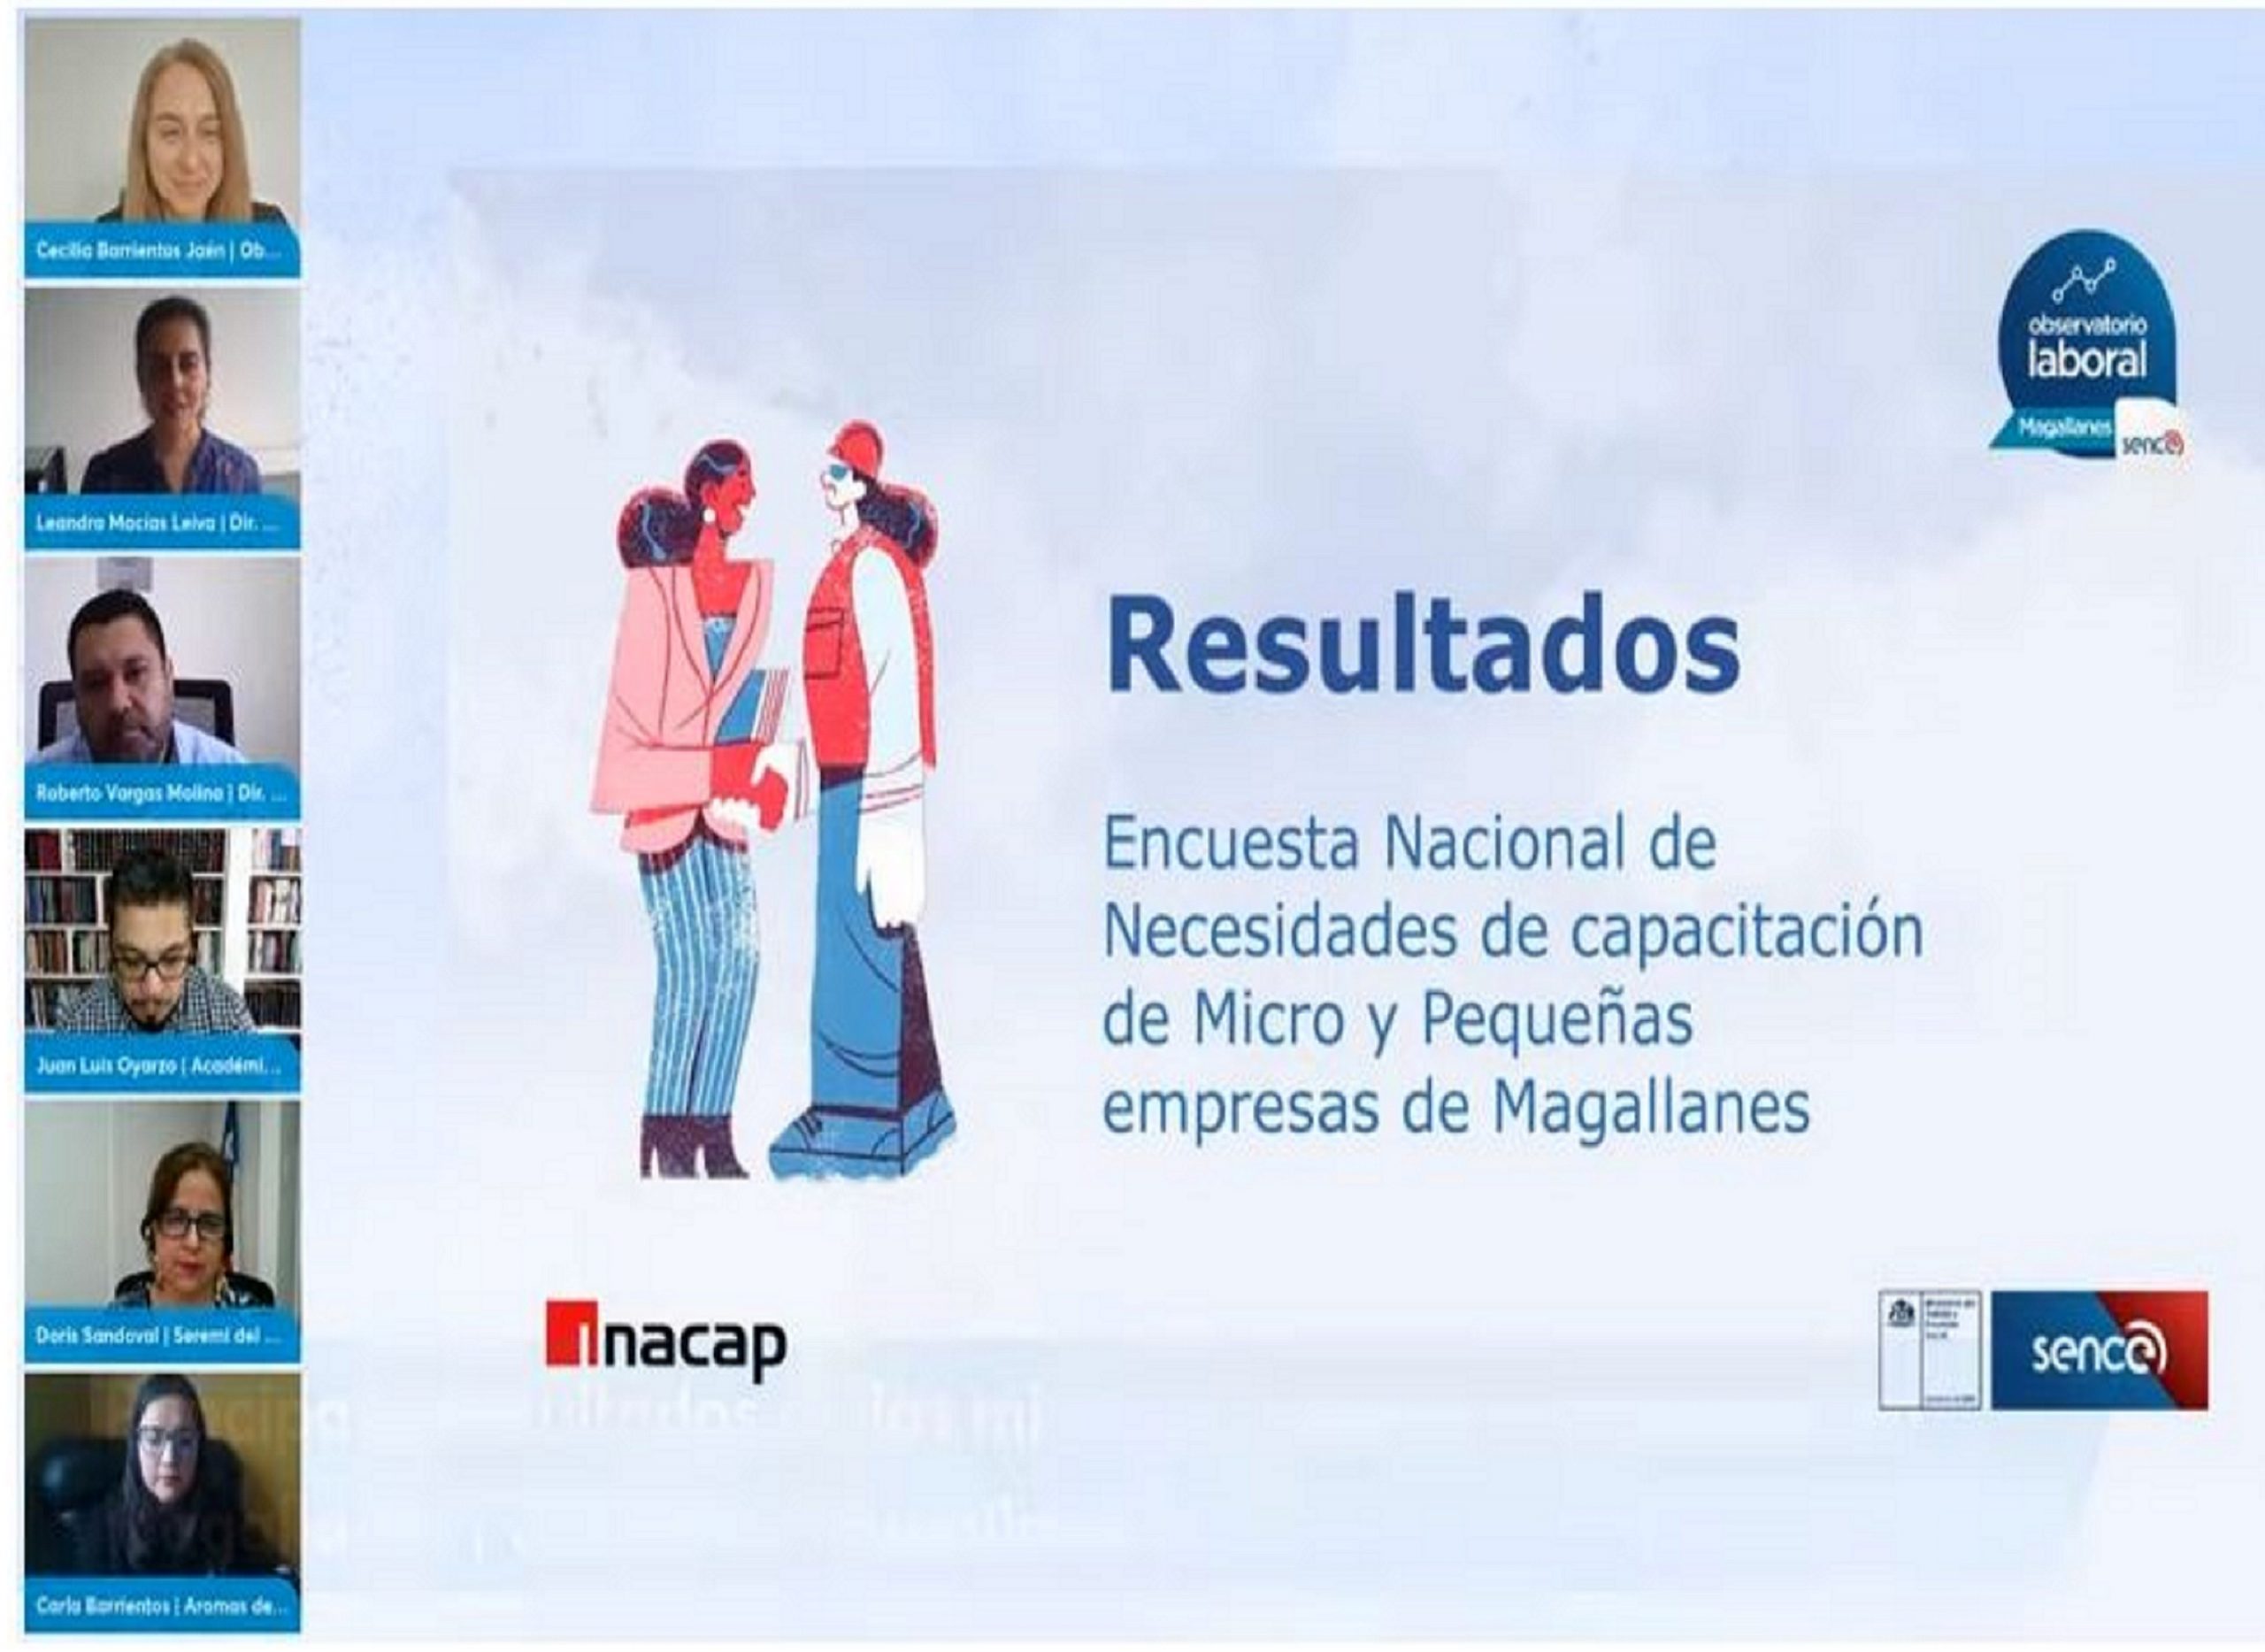 Observatorio Laboral Magallanes presenta resultados sobre necesidades de capacitación de las MIPEs